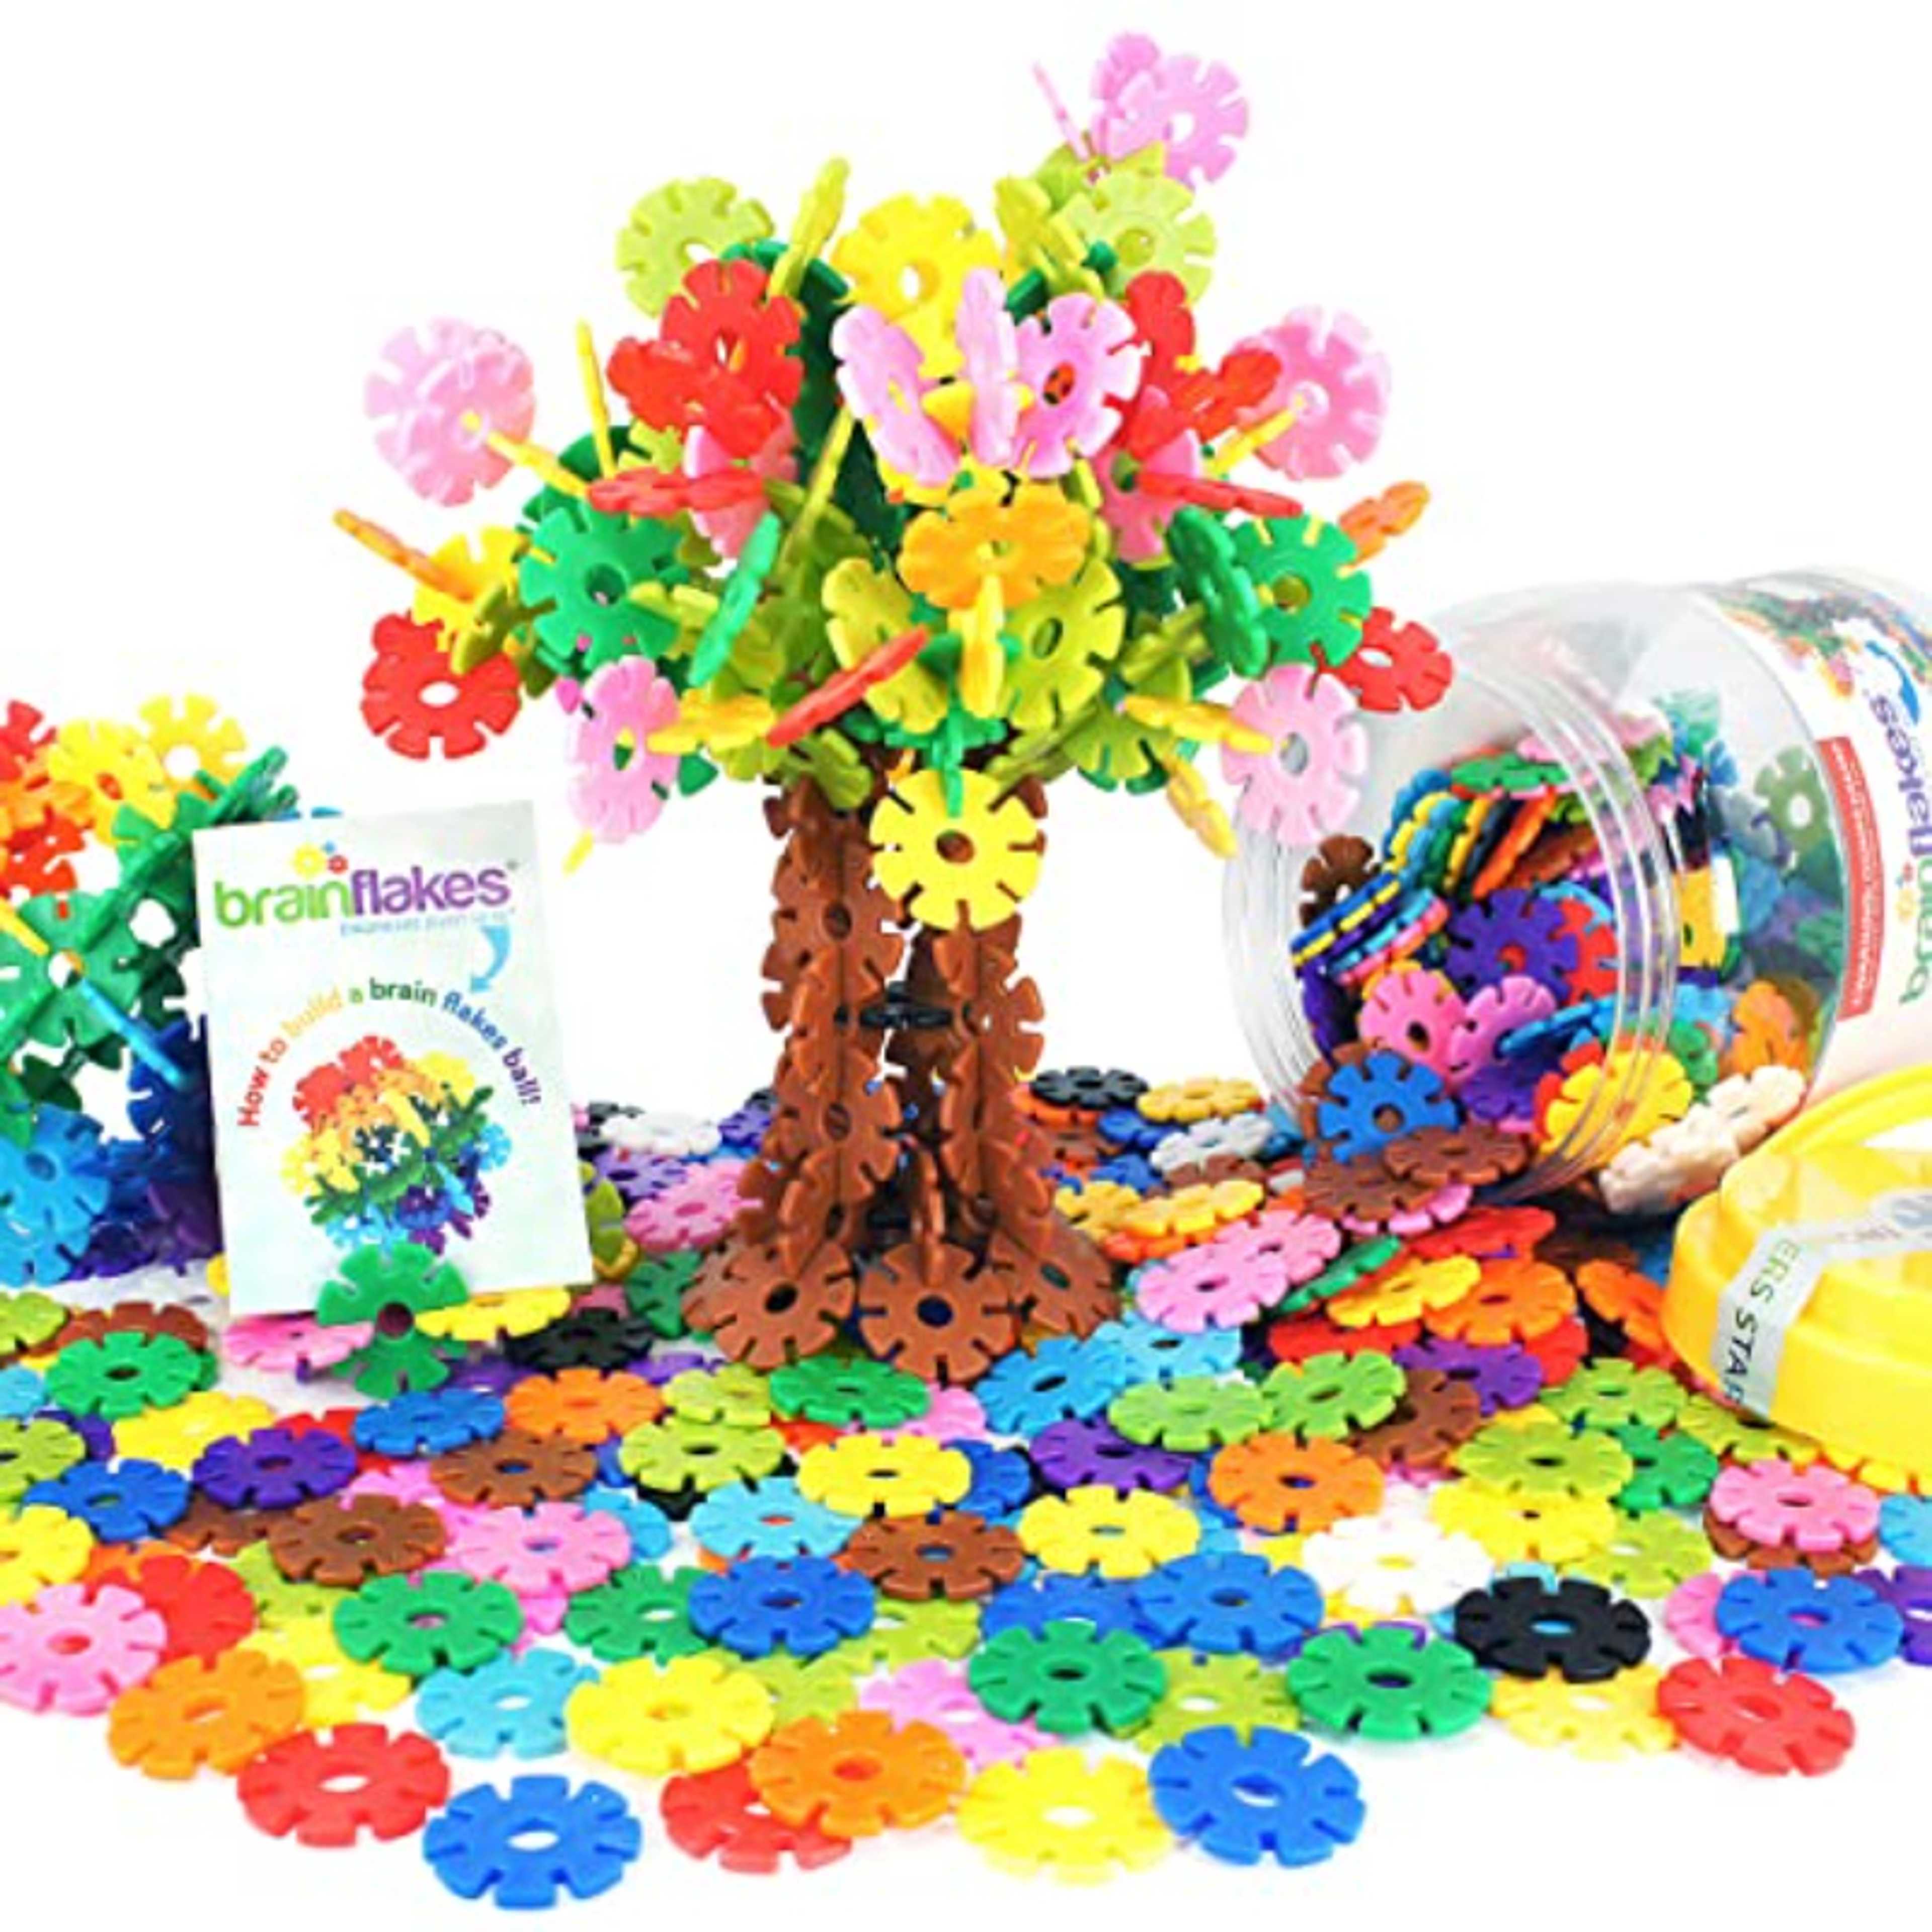 150Pcs 3D Puzzle Snowflake Building Creative Kids Flakes Interlocking Plastic Disc Set Construction kids Toys Brain